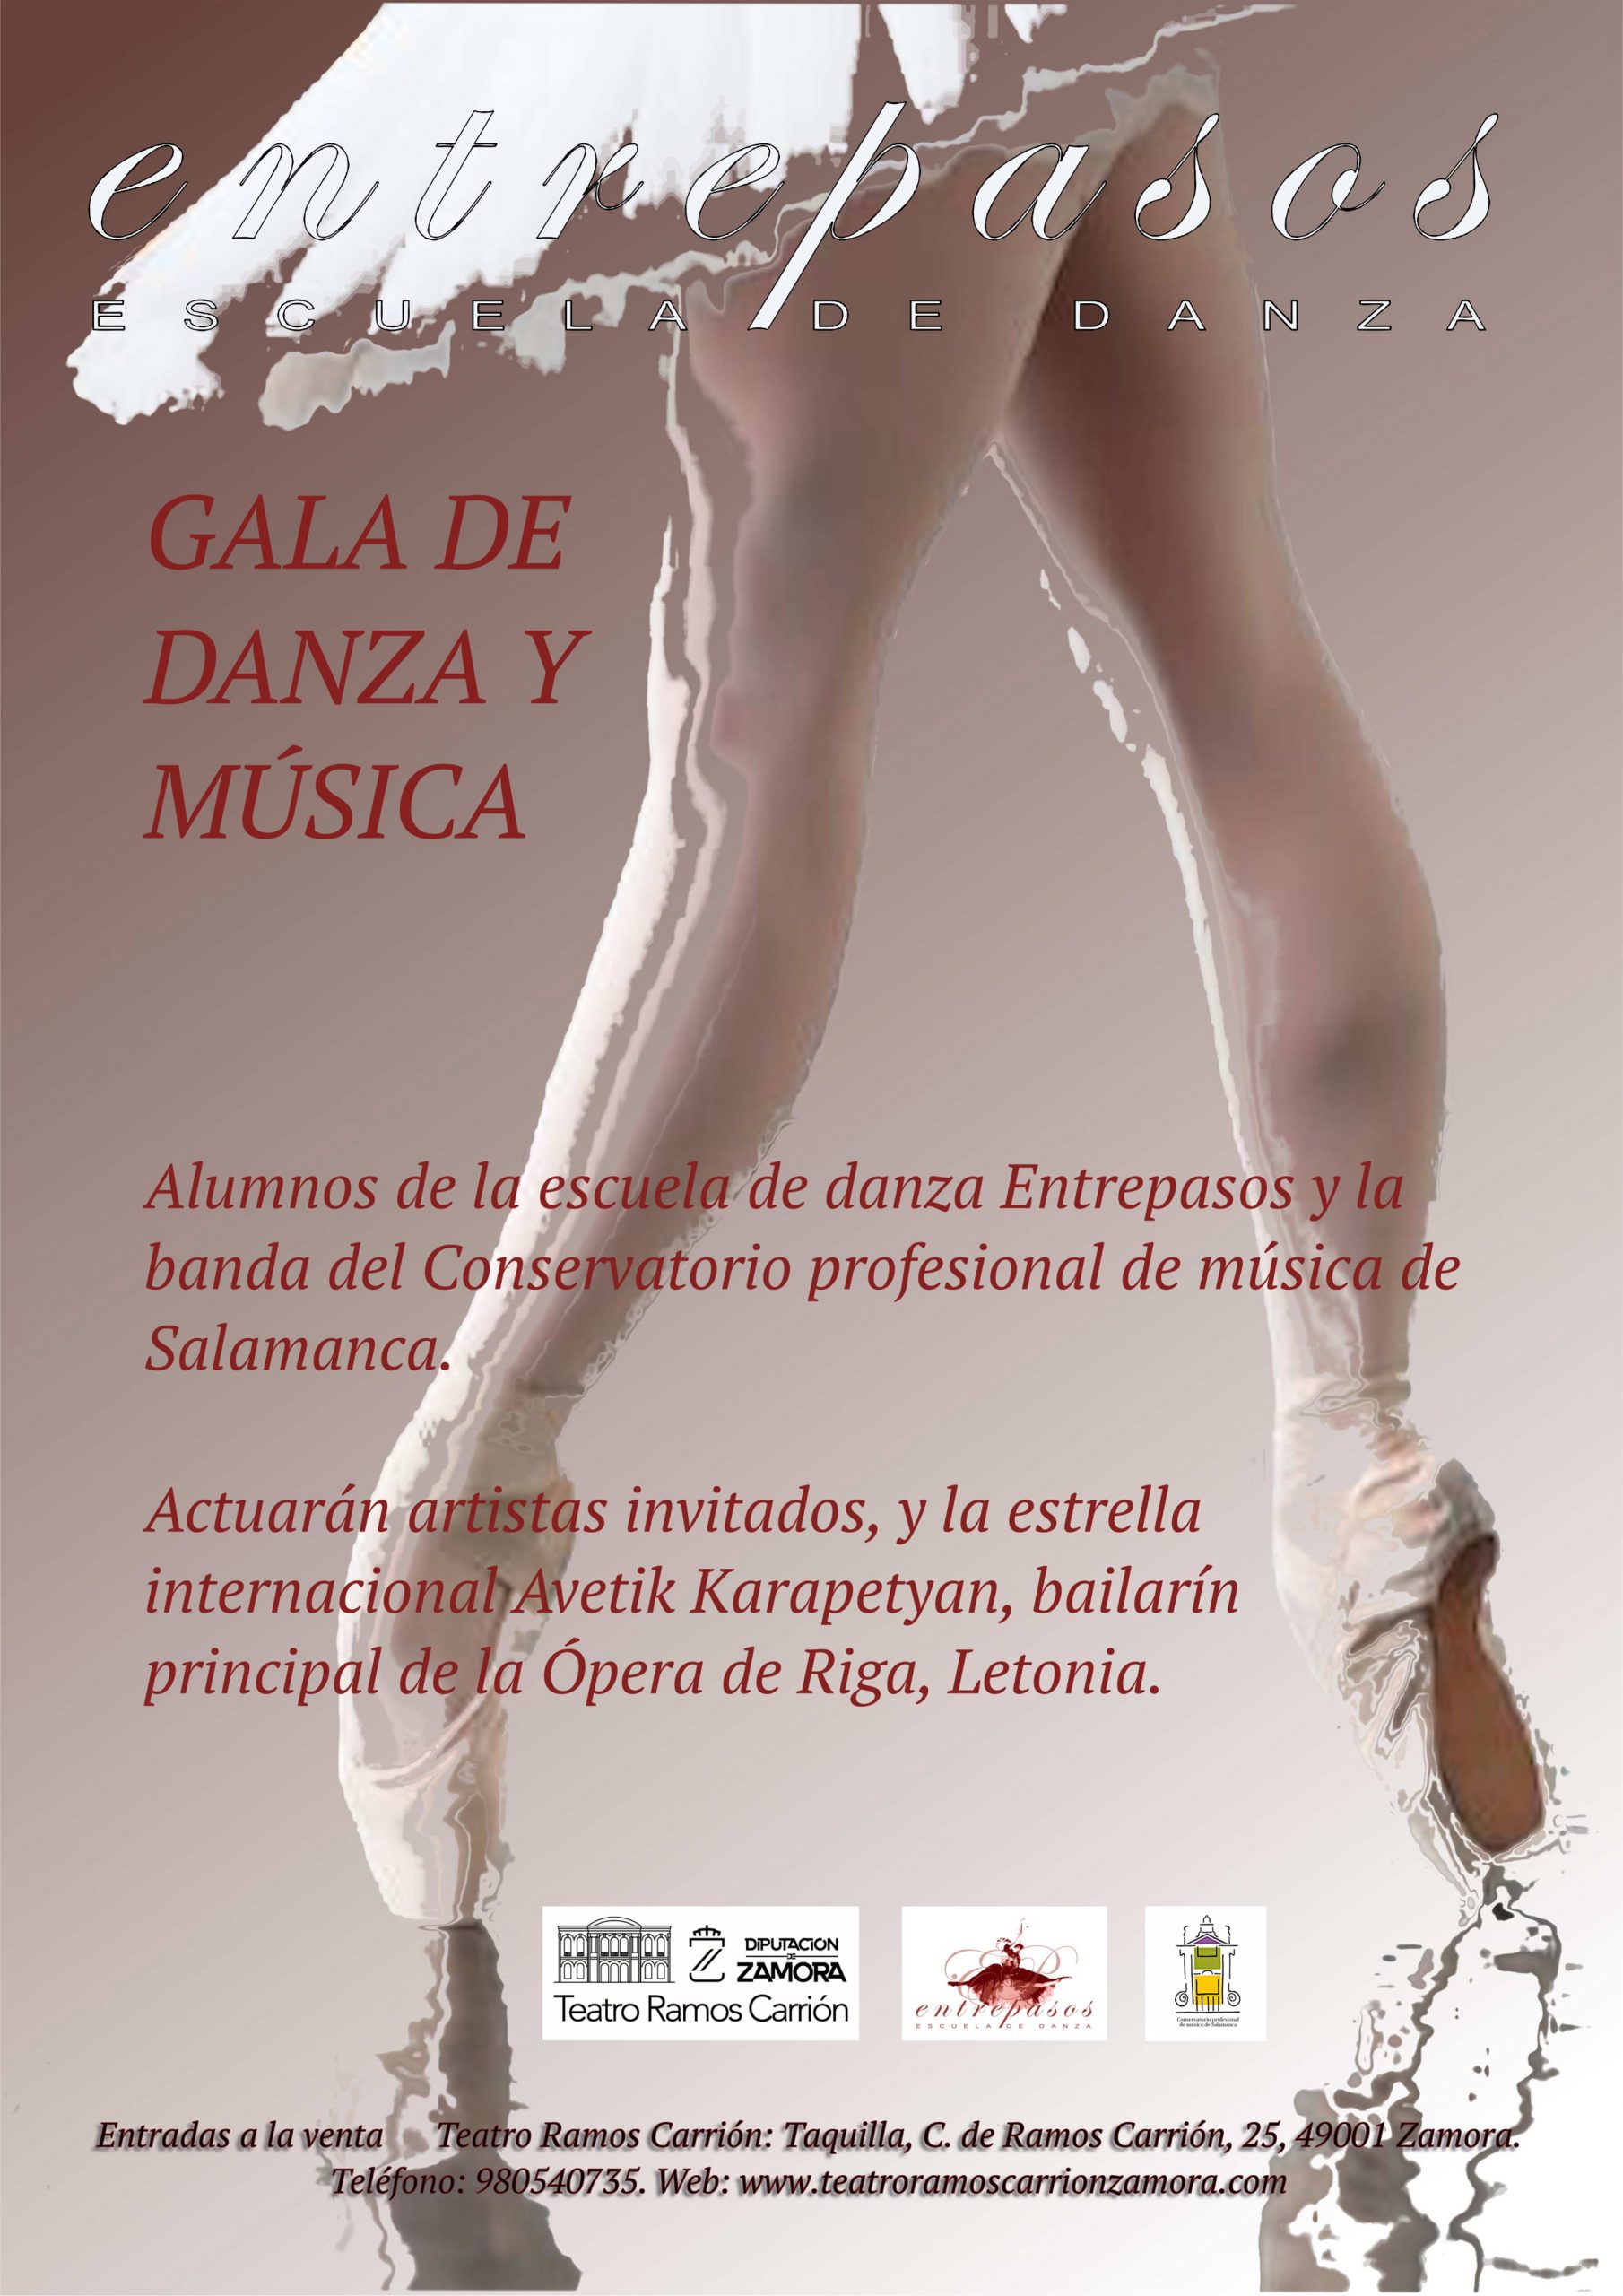 Gala de danza y música – Escuela Entrepasos. Zamora Inquieta. Teatro Ramos Carrión. Danza